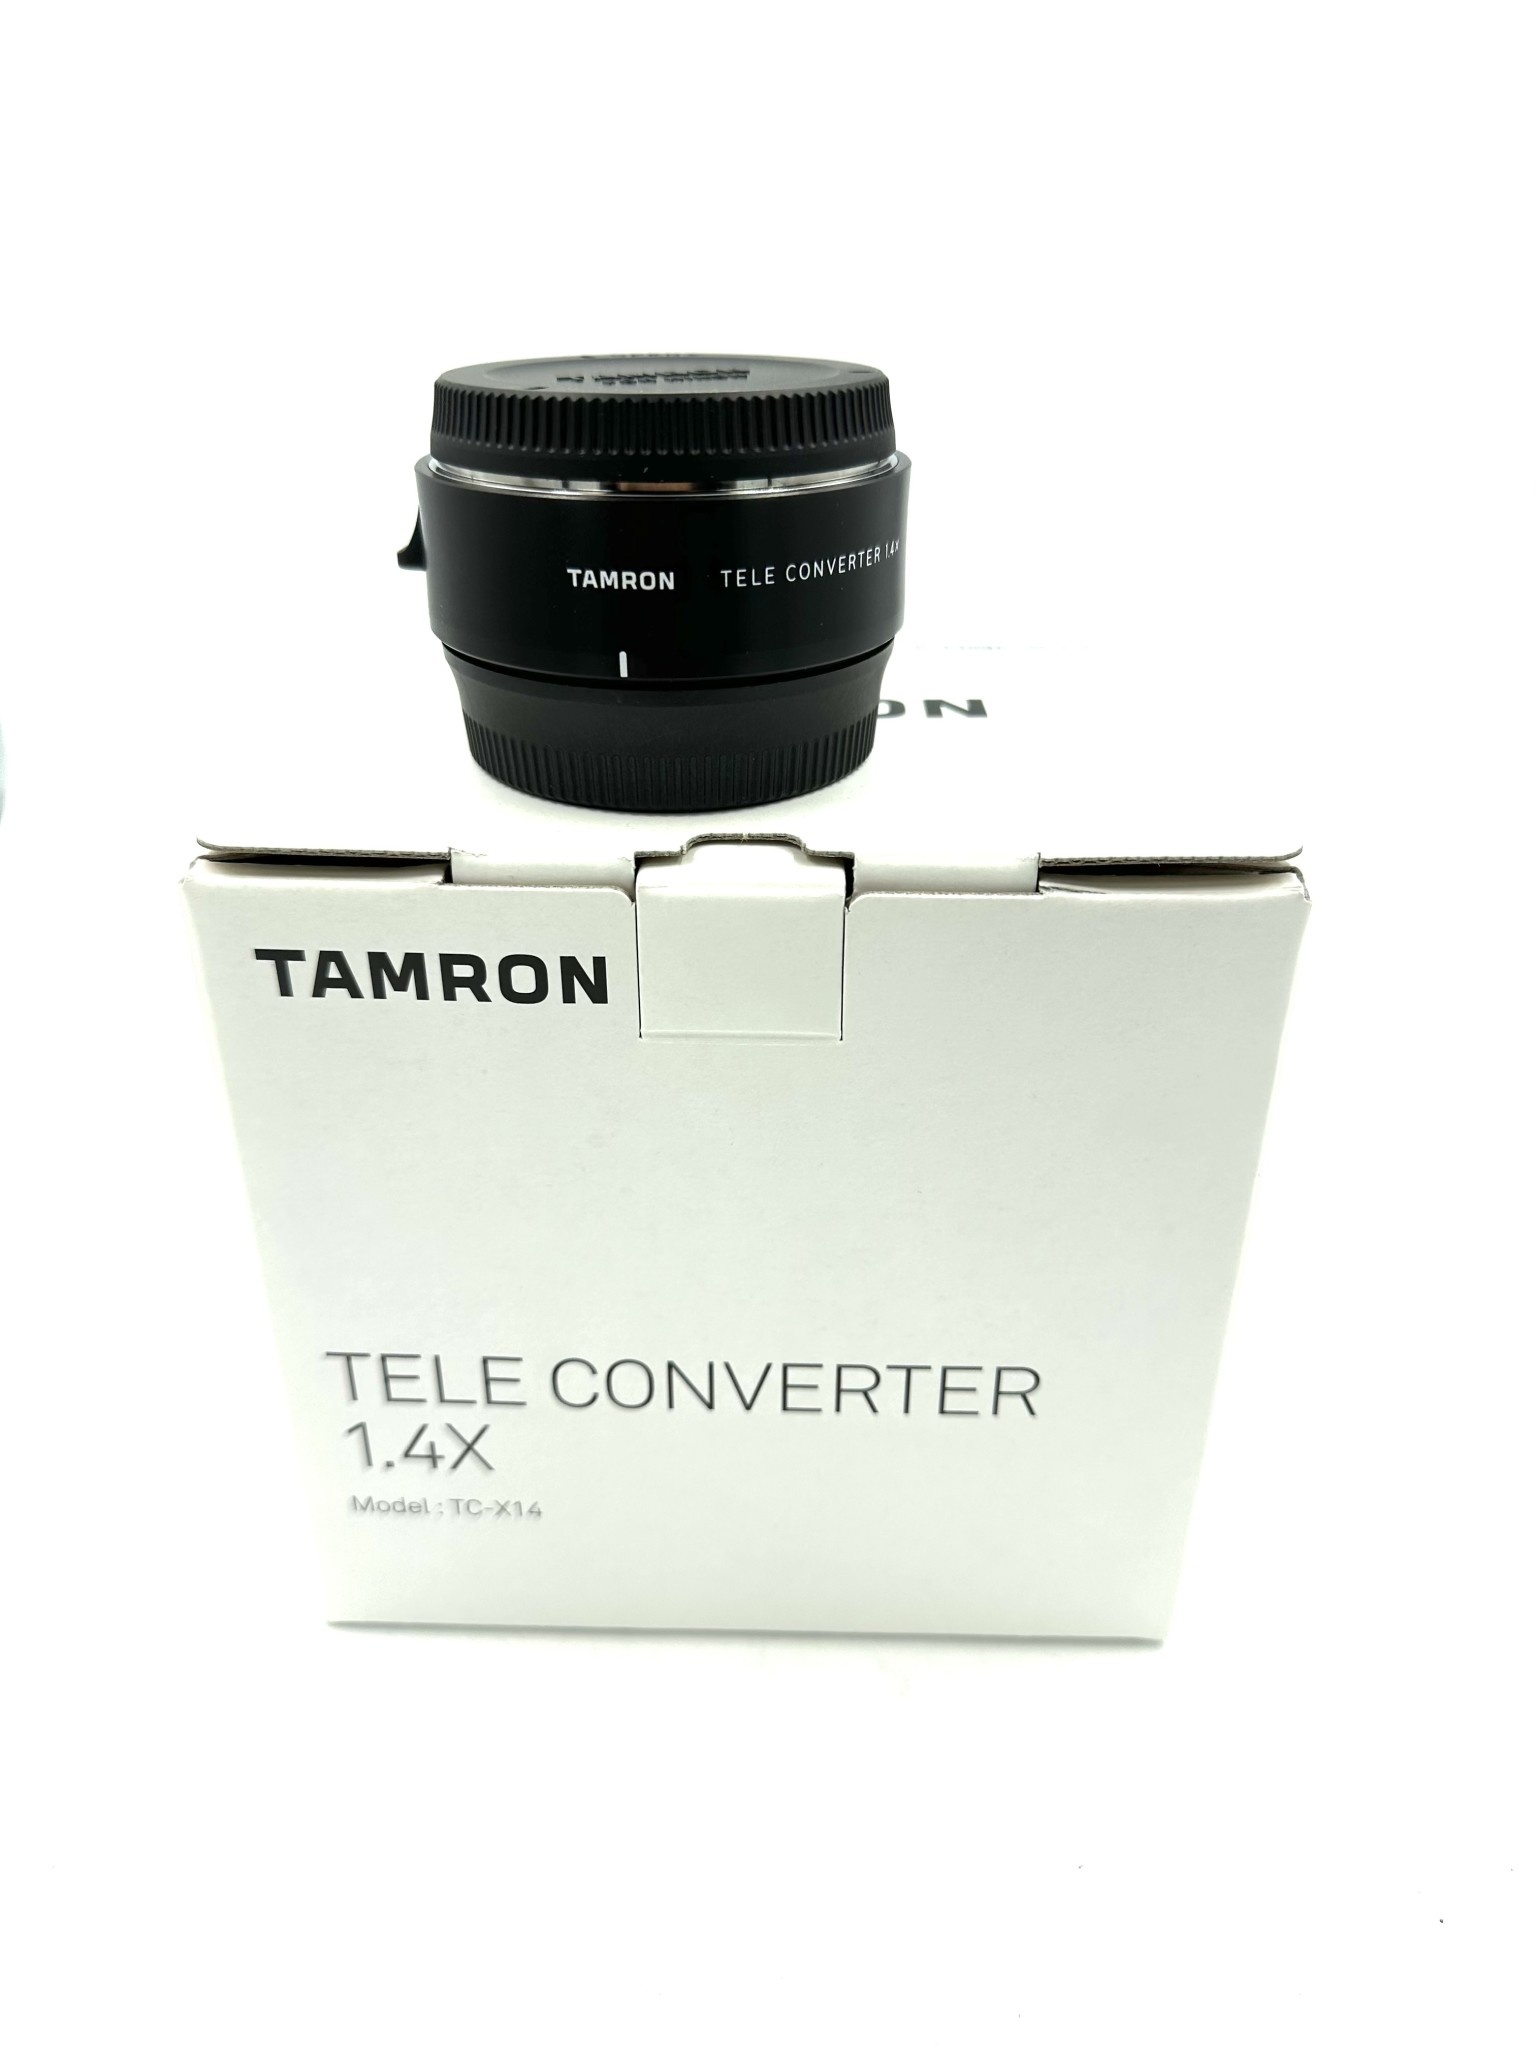 TAMRON TELE CONVERTER 1.4x Nikon用